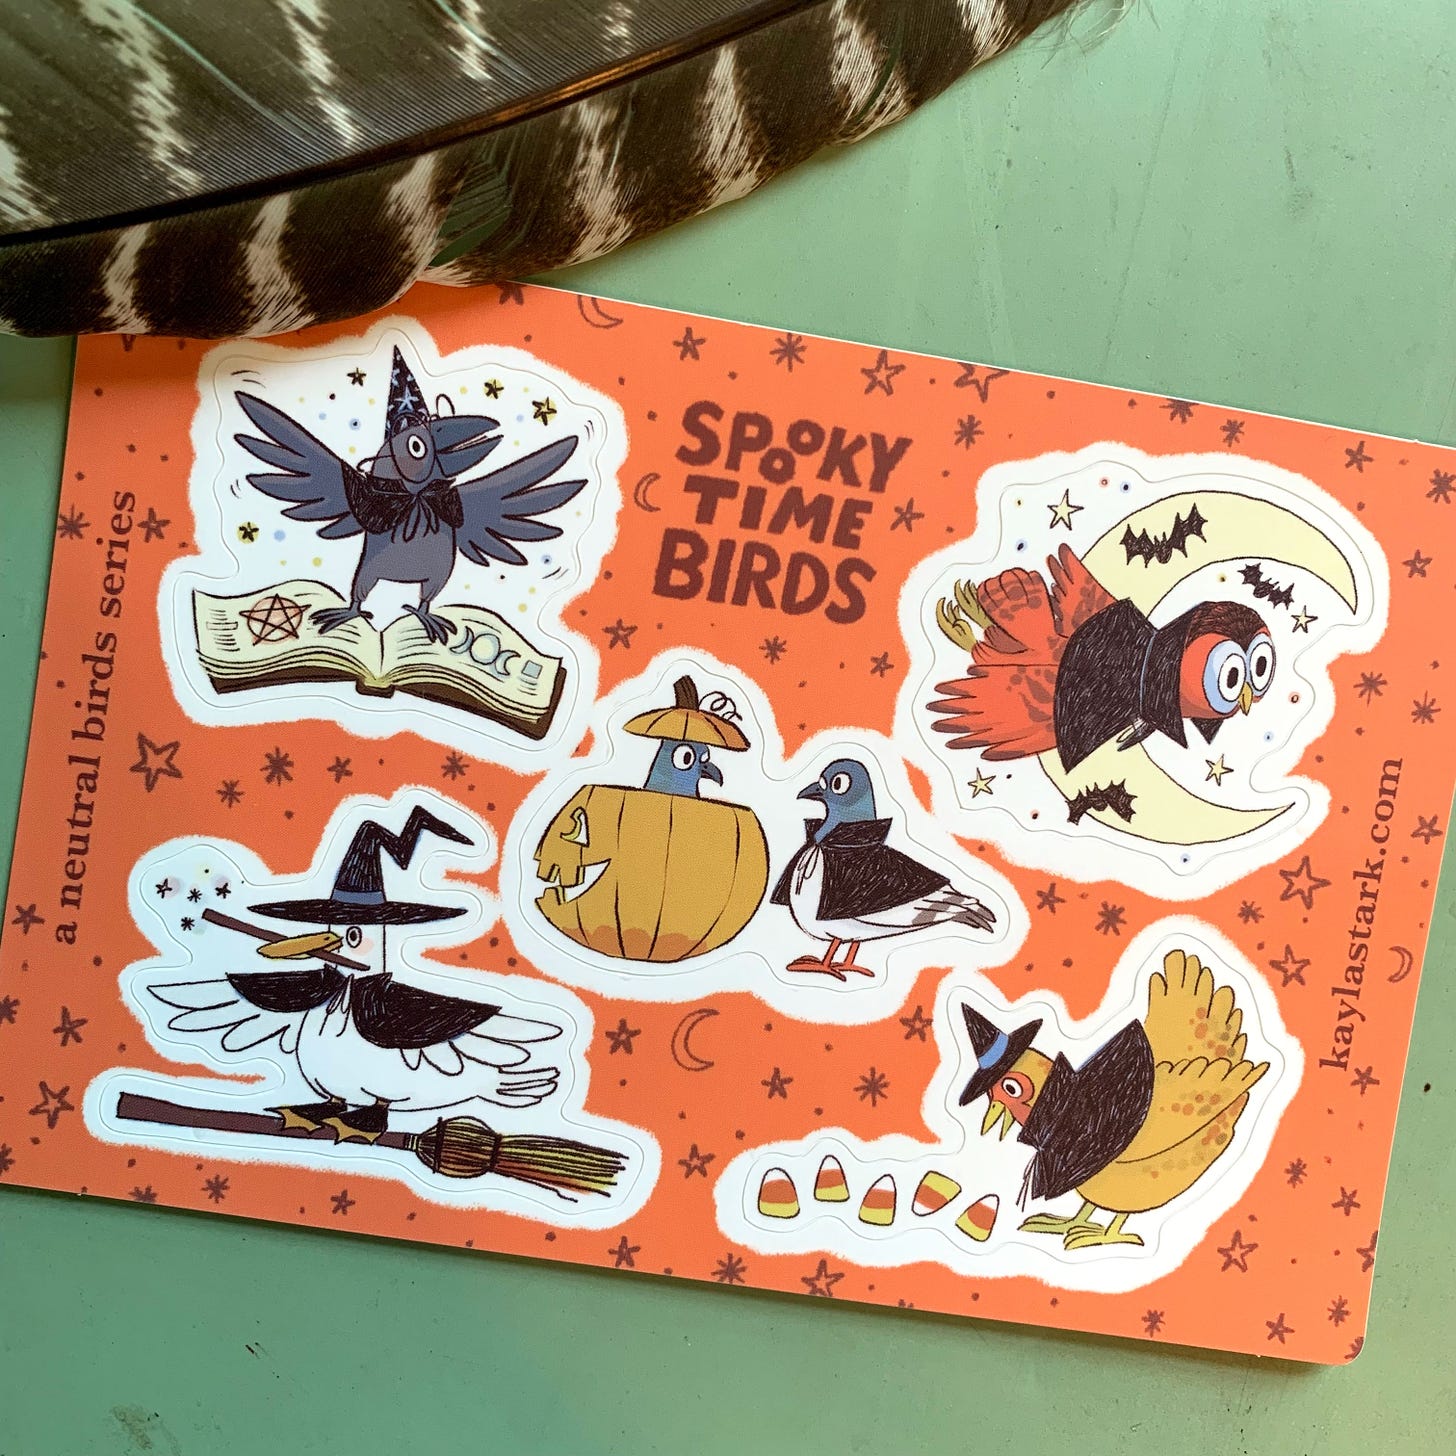 finished printed sticker sheet, halloween birds, spooky time birds, illustration, kayla stark